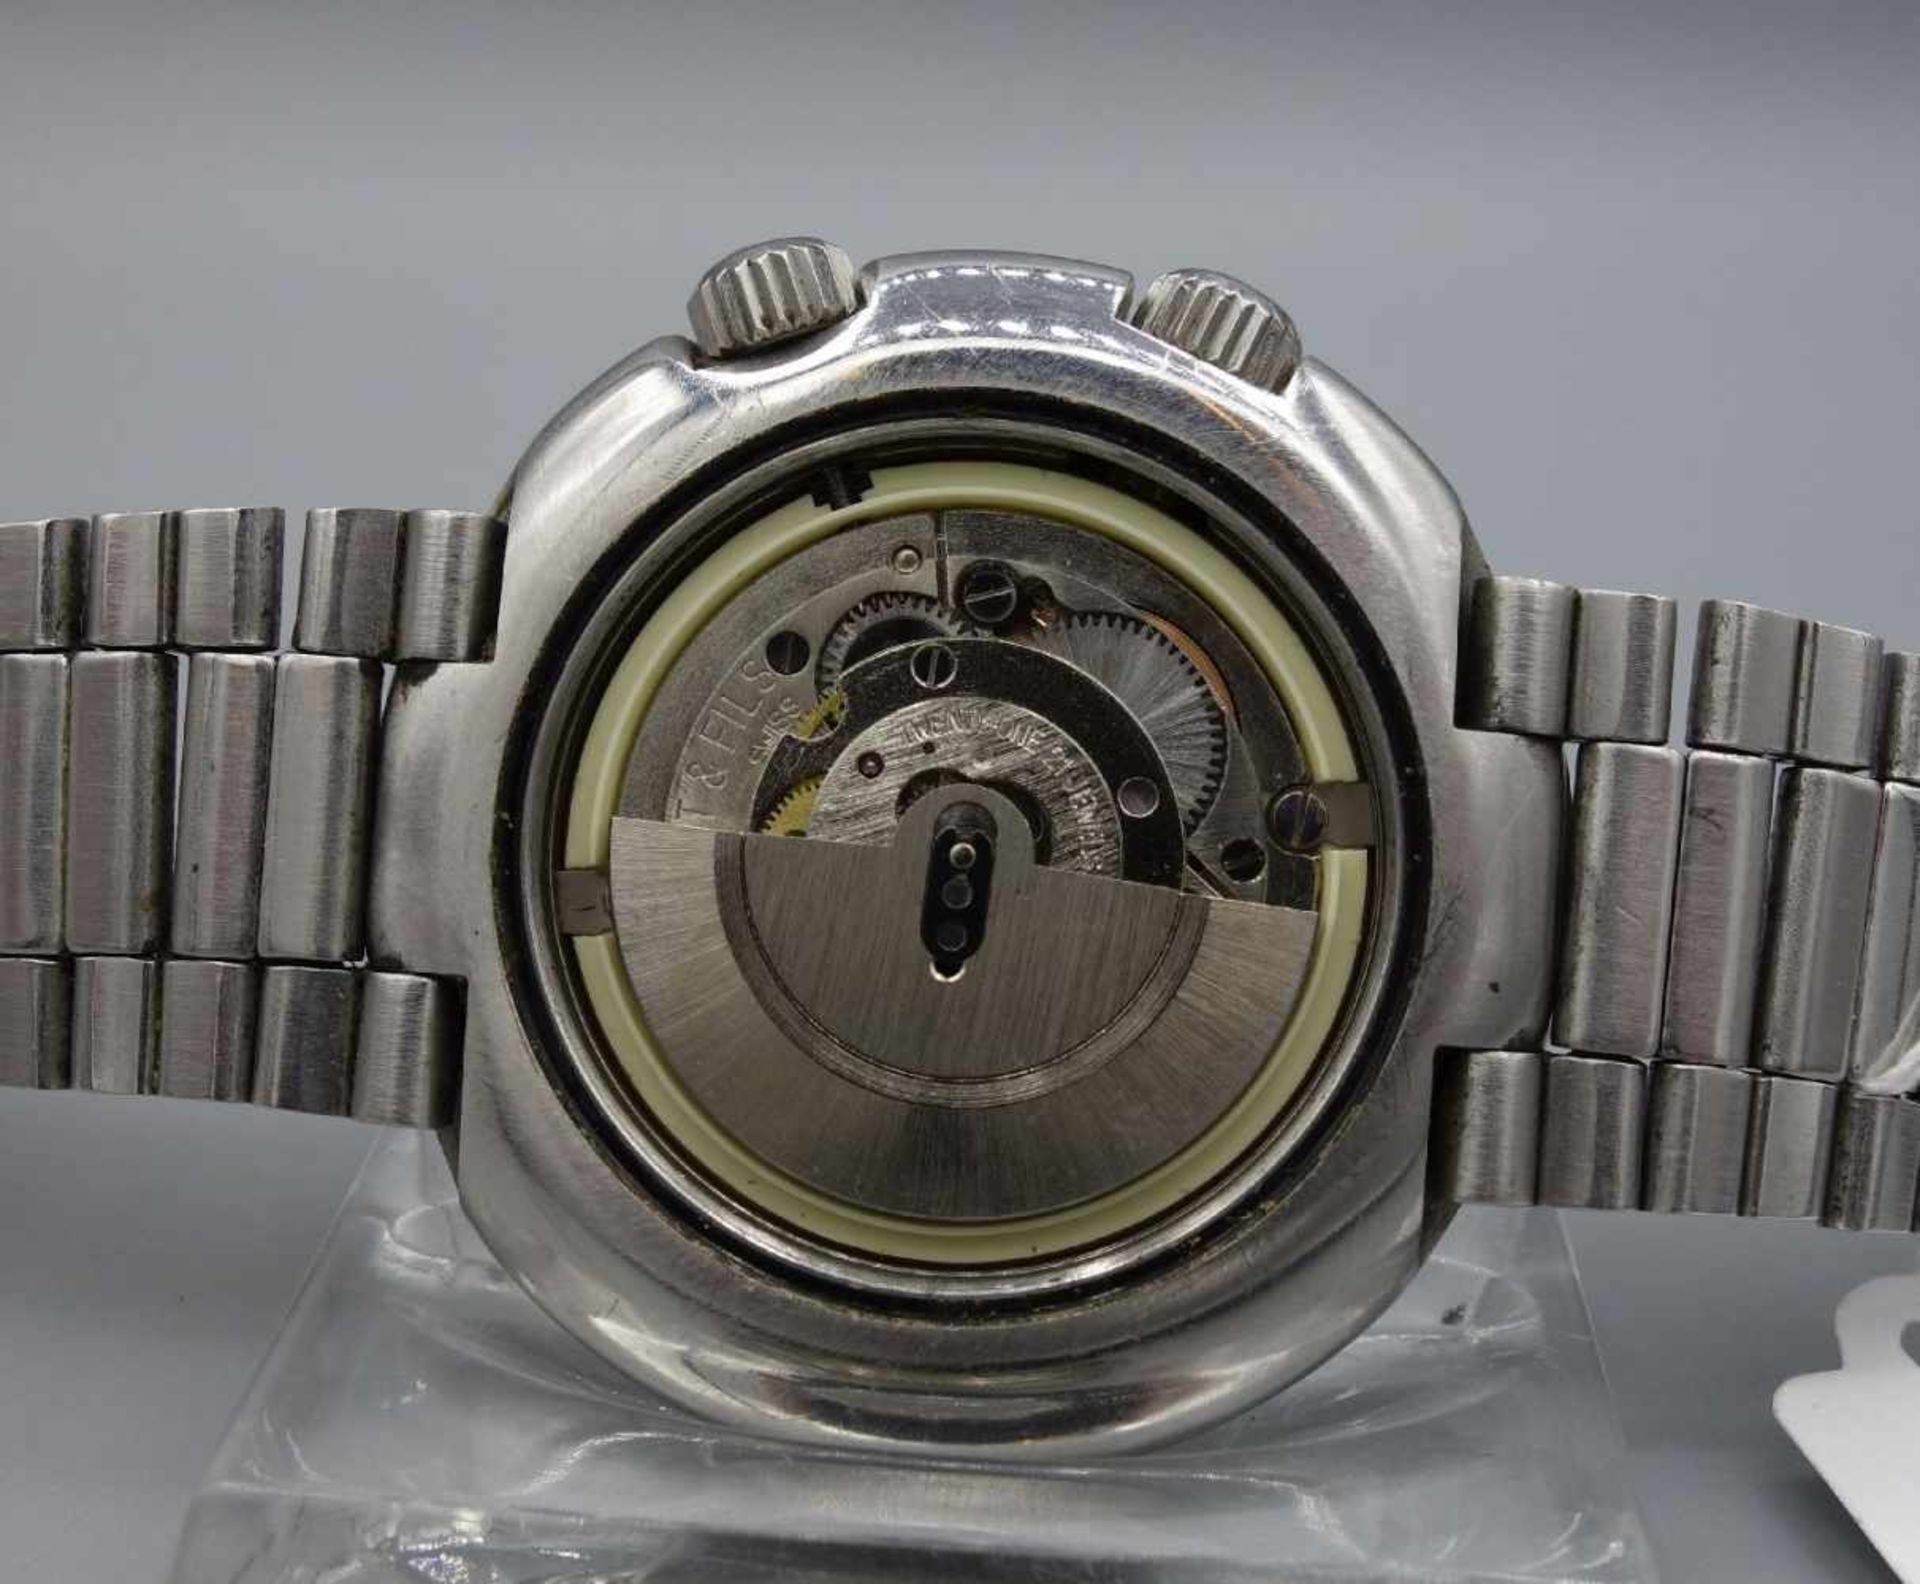 VINTAGE ARMBANDUHR: TISSOT NAVIGATOR T12 / wristwatch, 1970er Jahre, Manufaktur Tissot / Schweiz, - Image 7 of 8